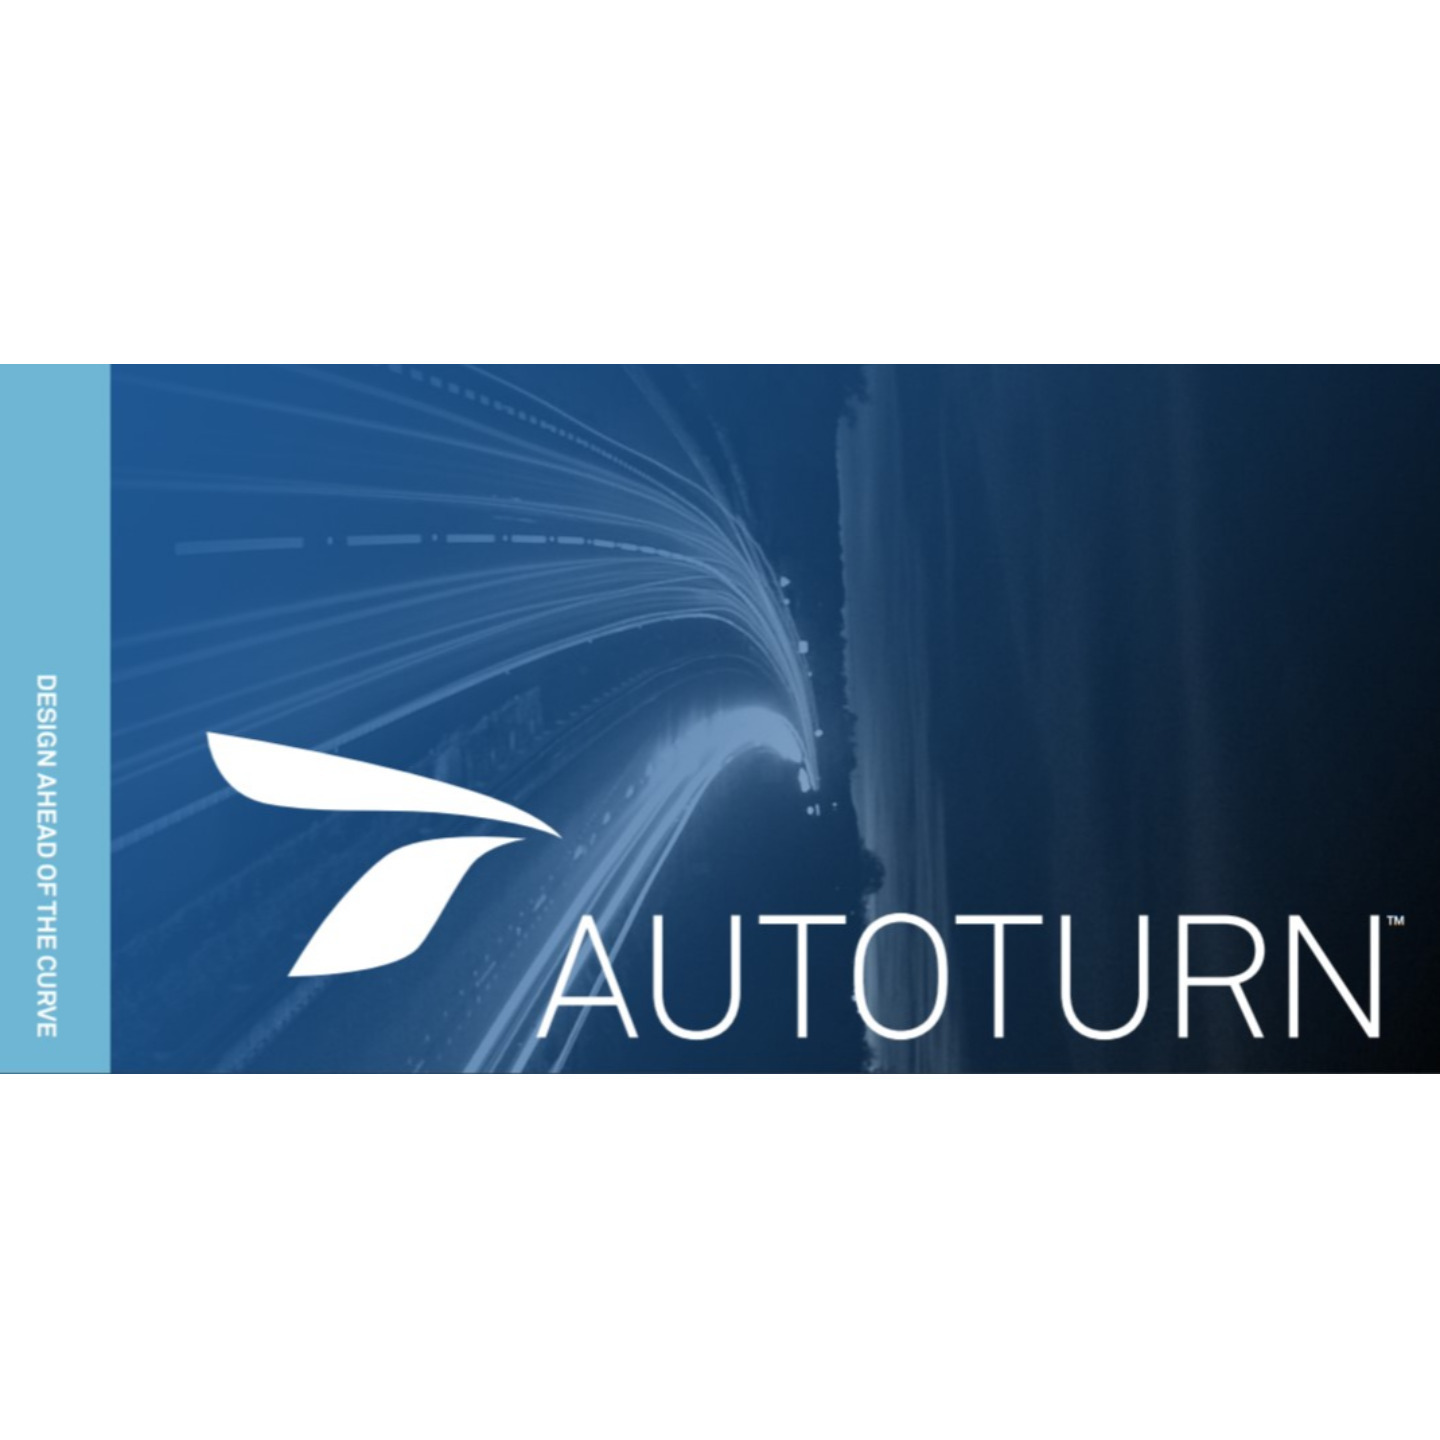 autoturn free download